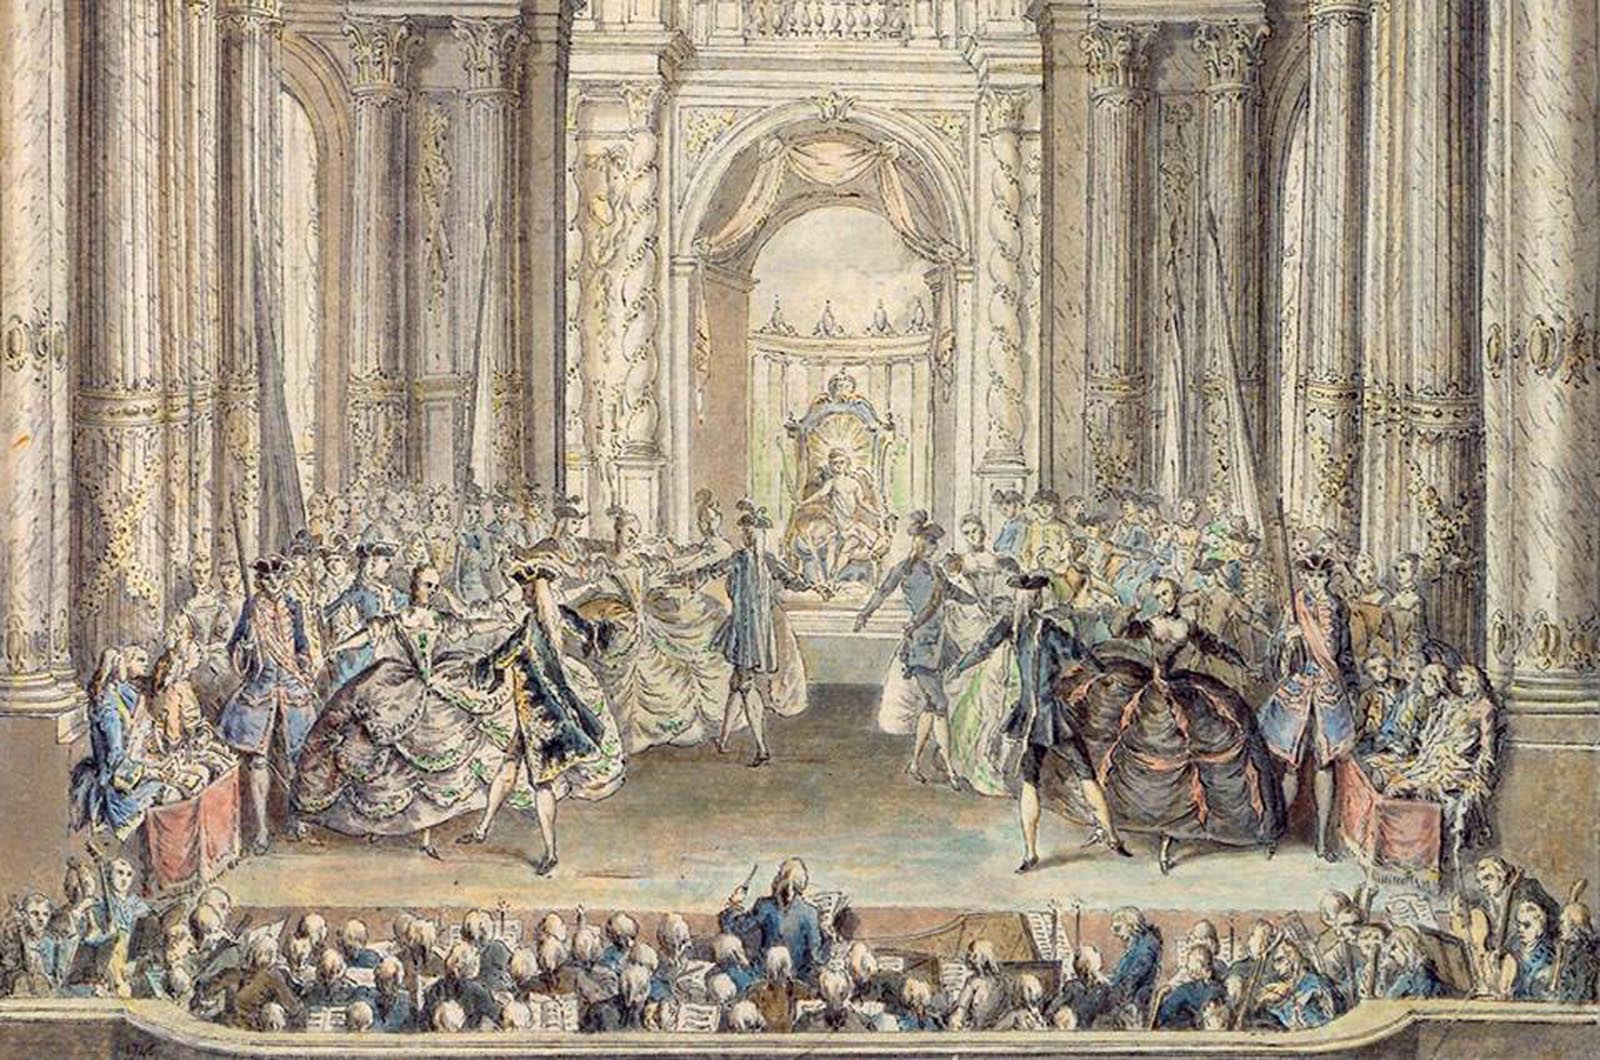 Sejarah Balet - Pengaruh Prancis dan Istana Louis XIV (Abad ke-17)